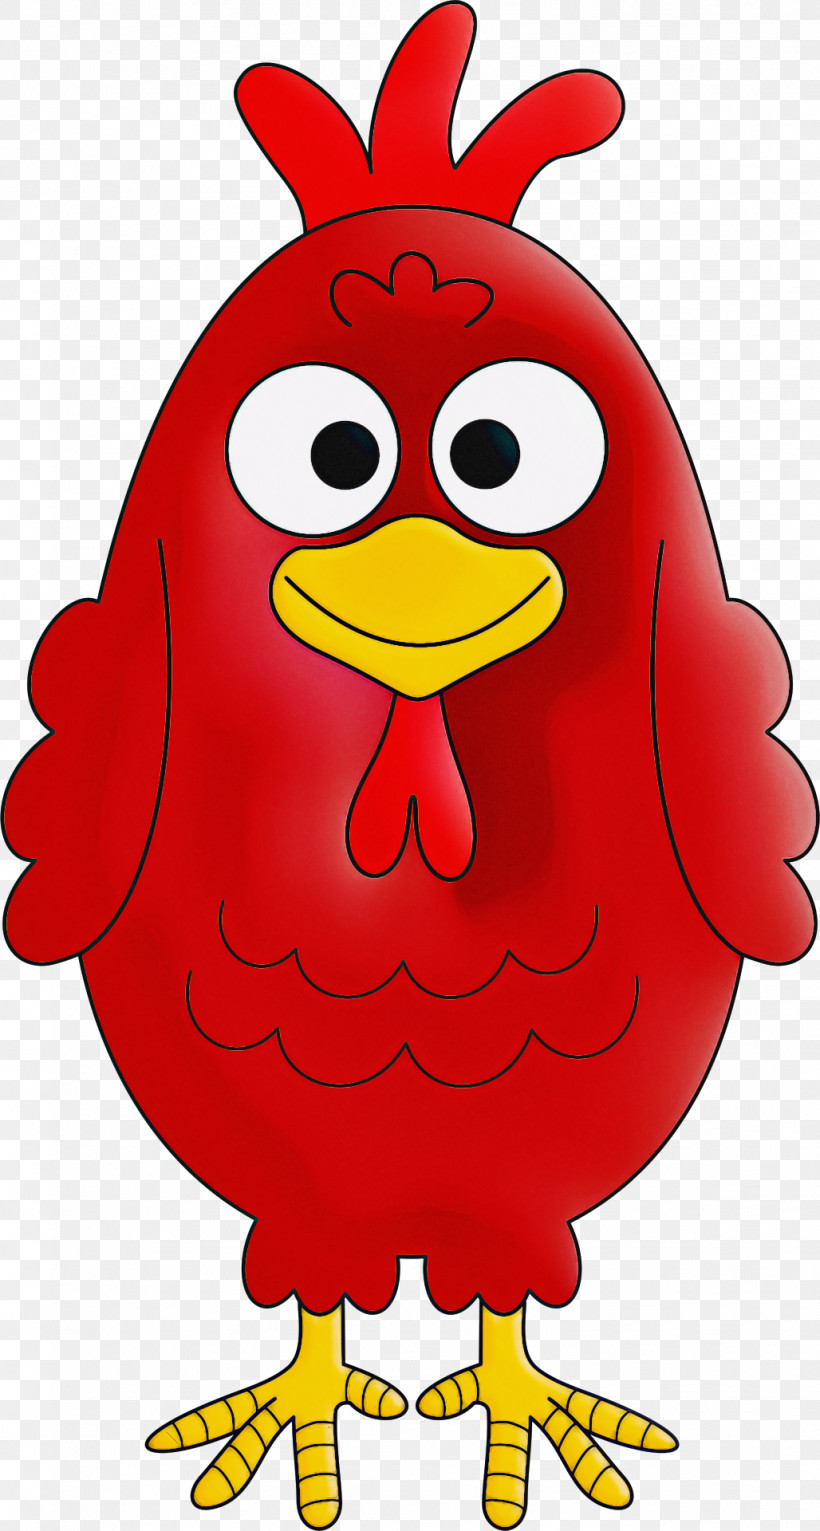 Red Bird Chicken Cartoon Beak, PNG, 1028x1920px, Red, Beak, Bird, Cartoon, Chicken Download Free